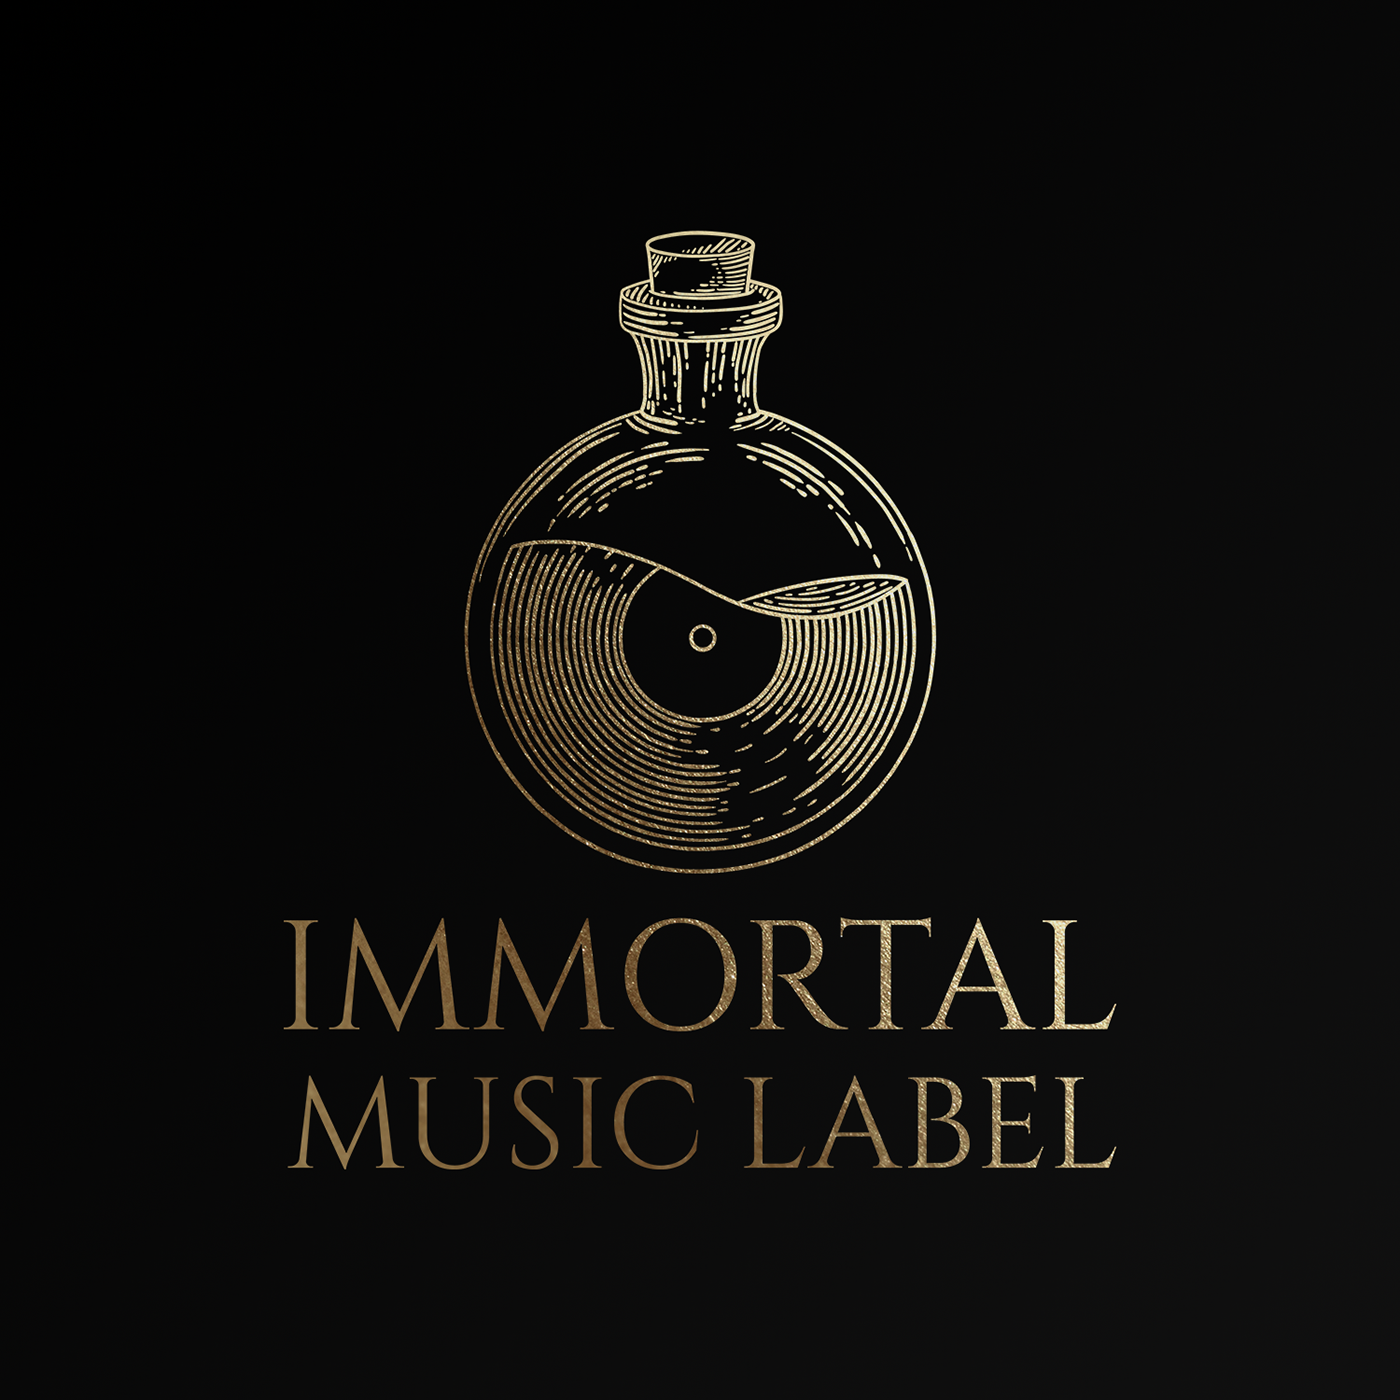 record label logo ideas 1